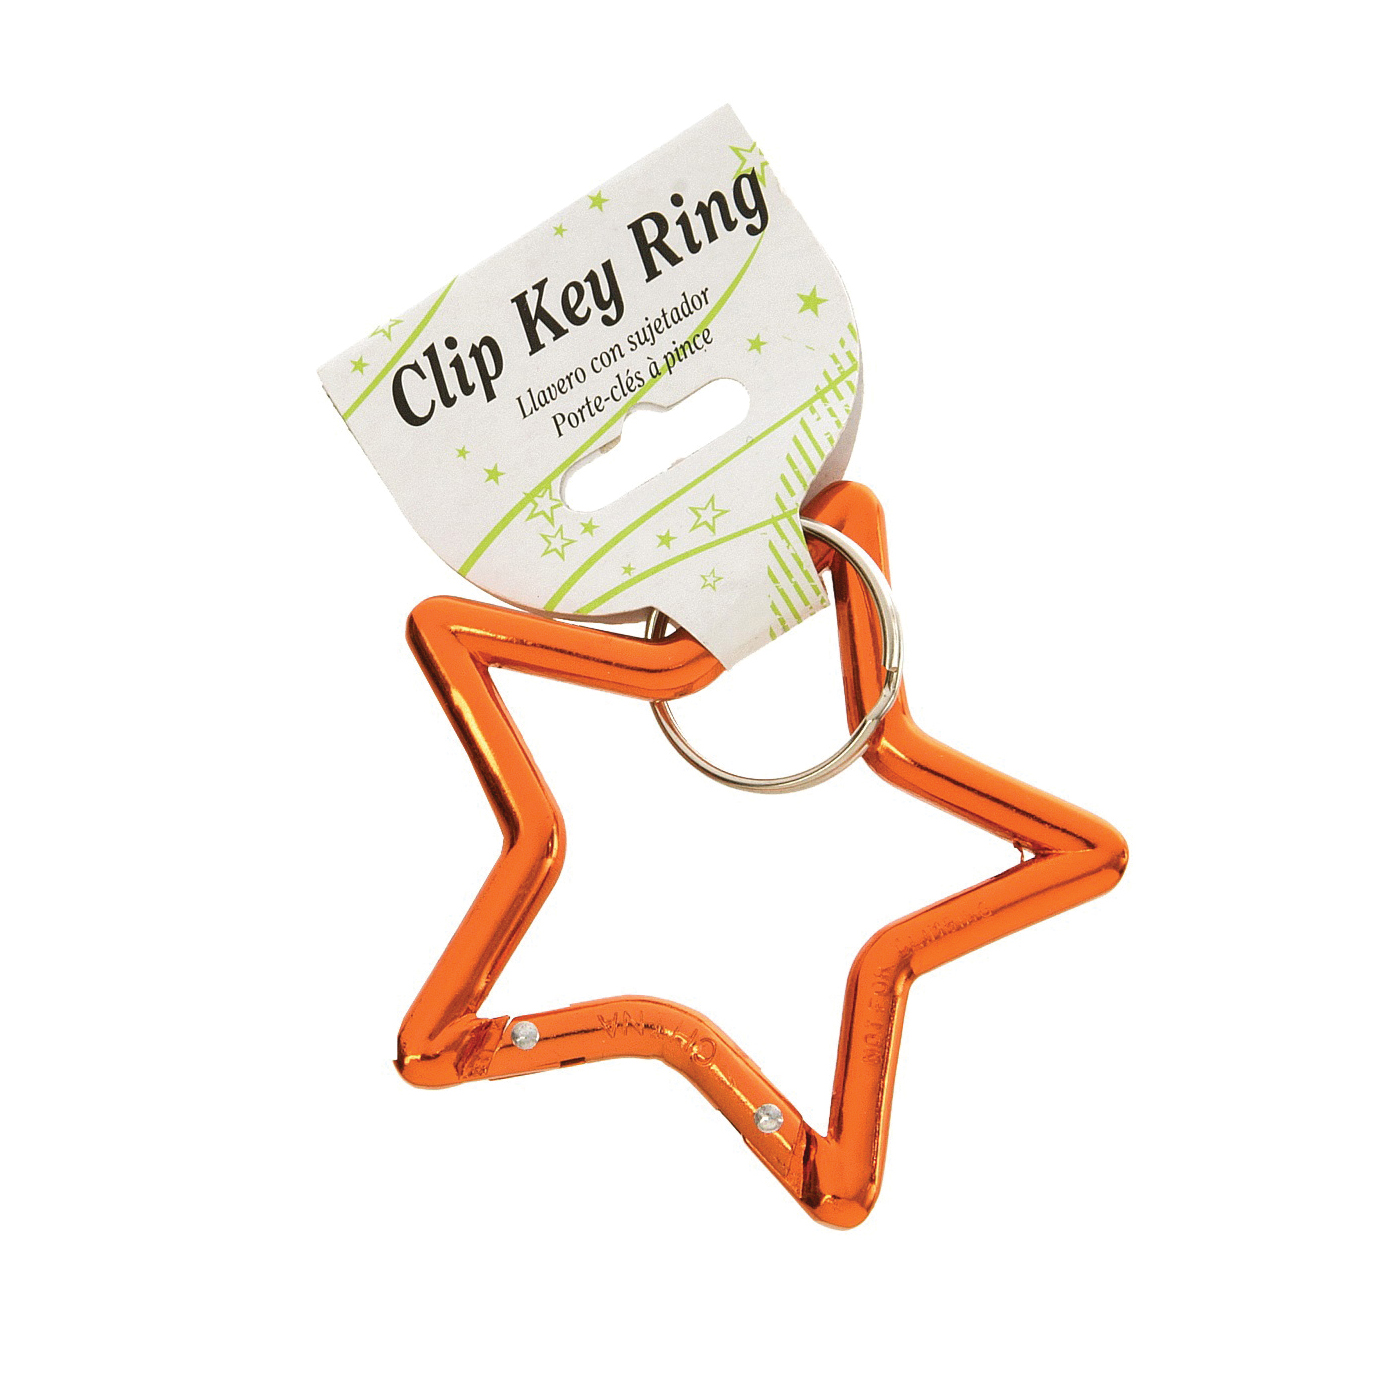 Hy-Ko KH495 Key Ring, Carabiner Ring